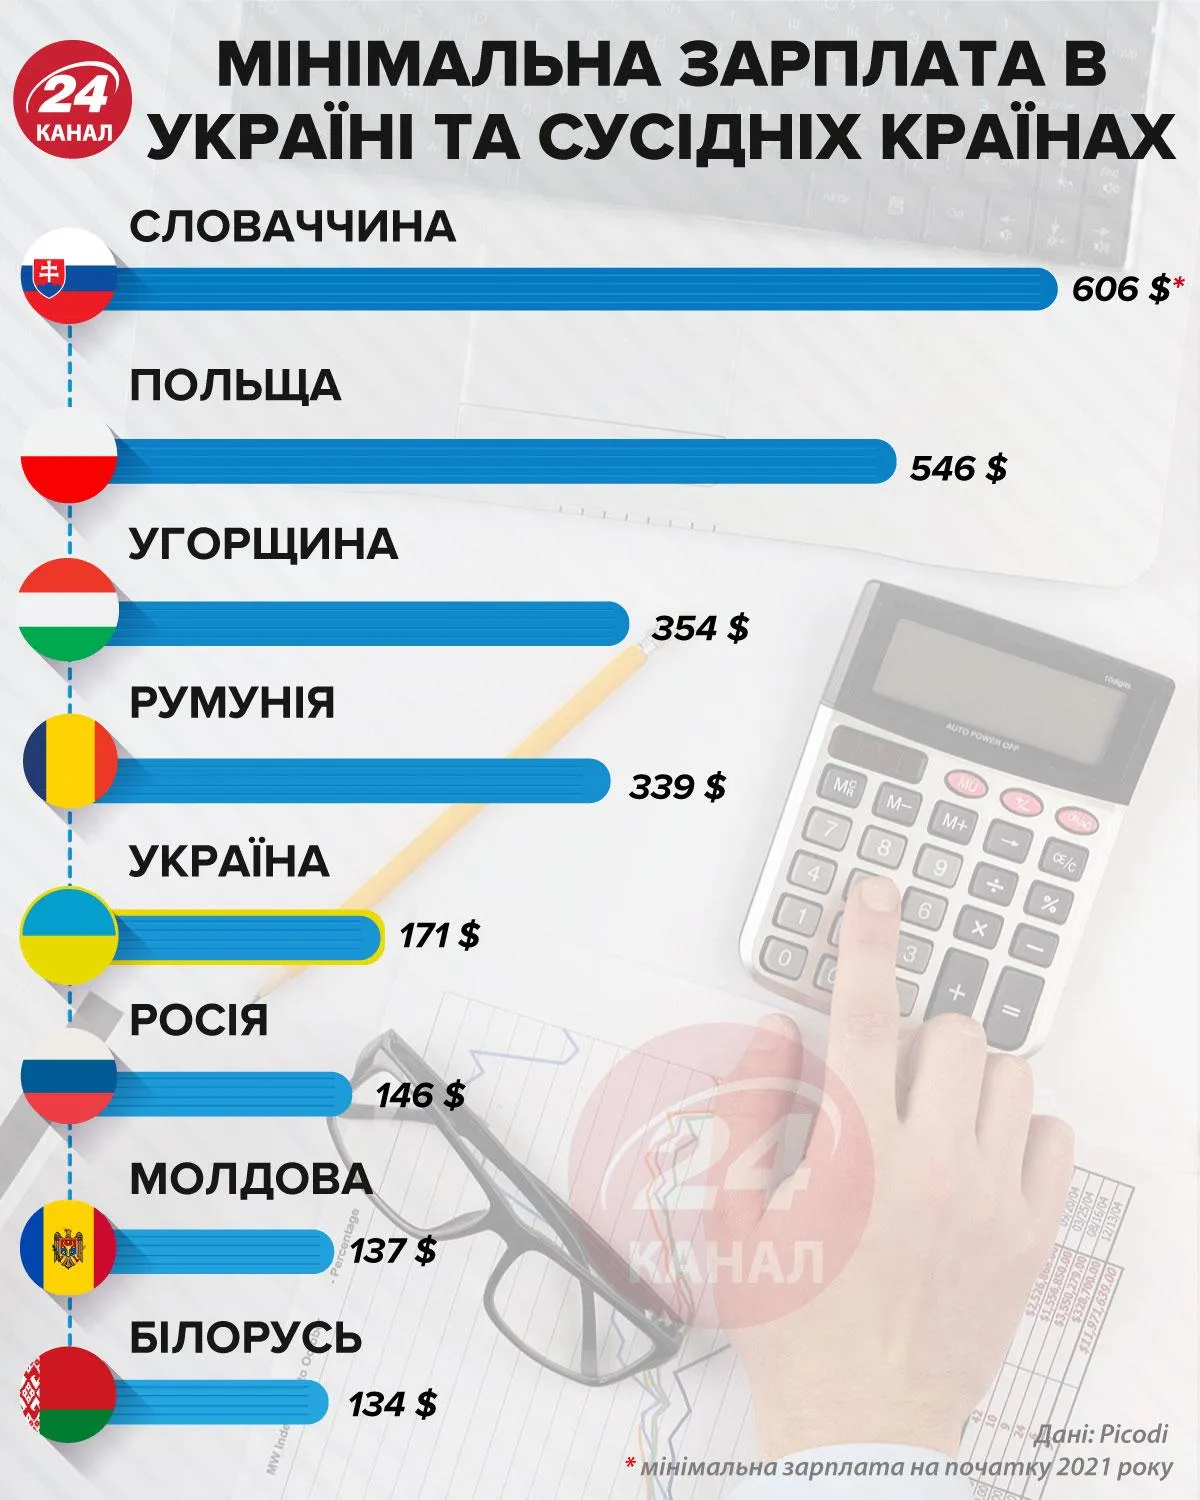 Минимальная зарплата в Украине и соседних странах / Инфографика 24 канал